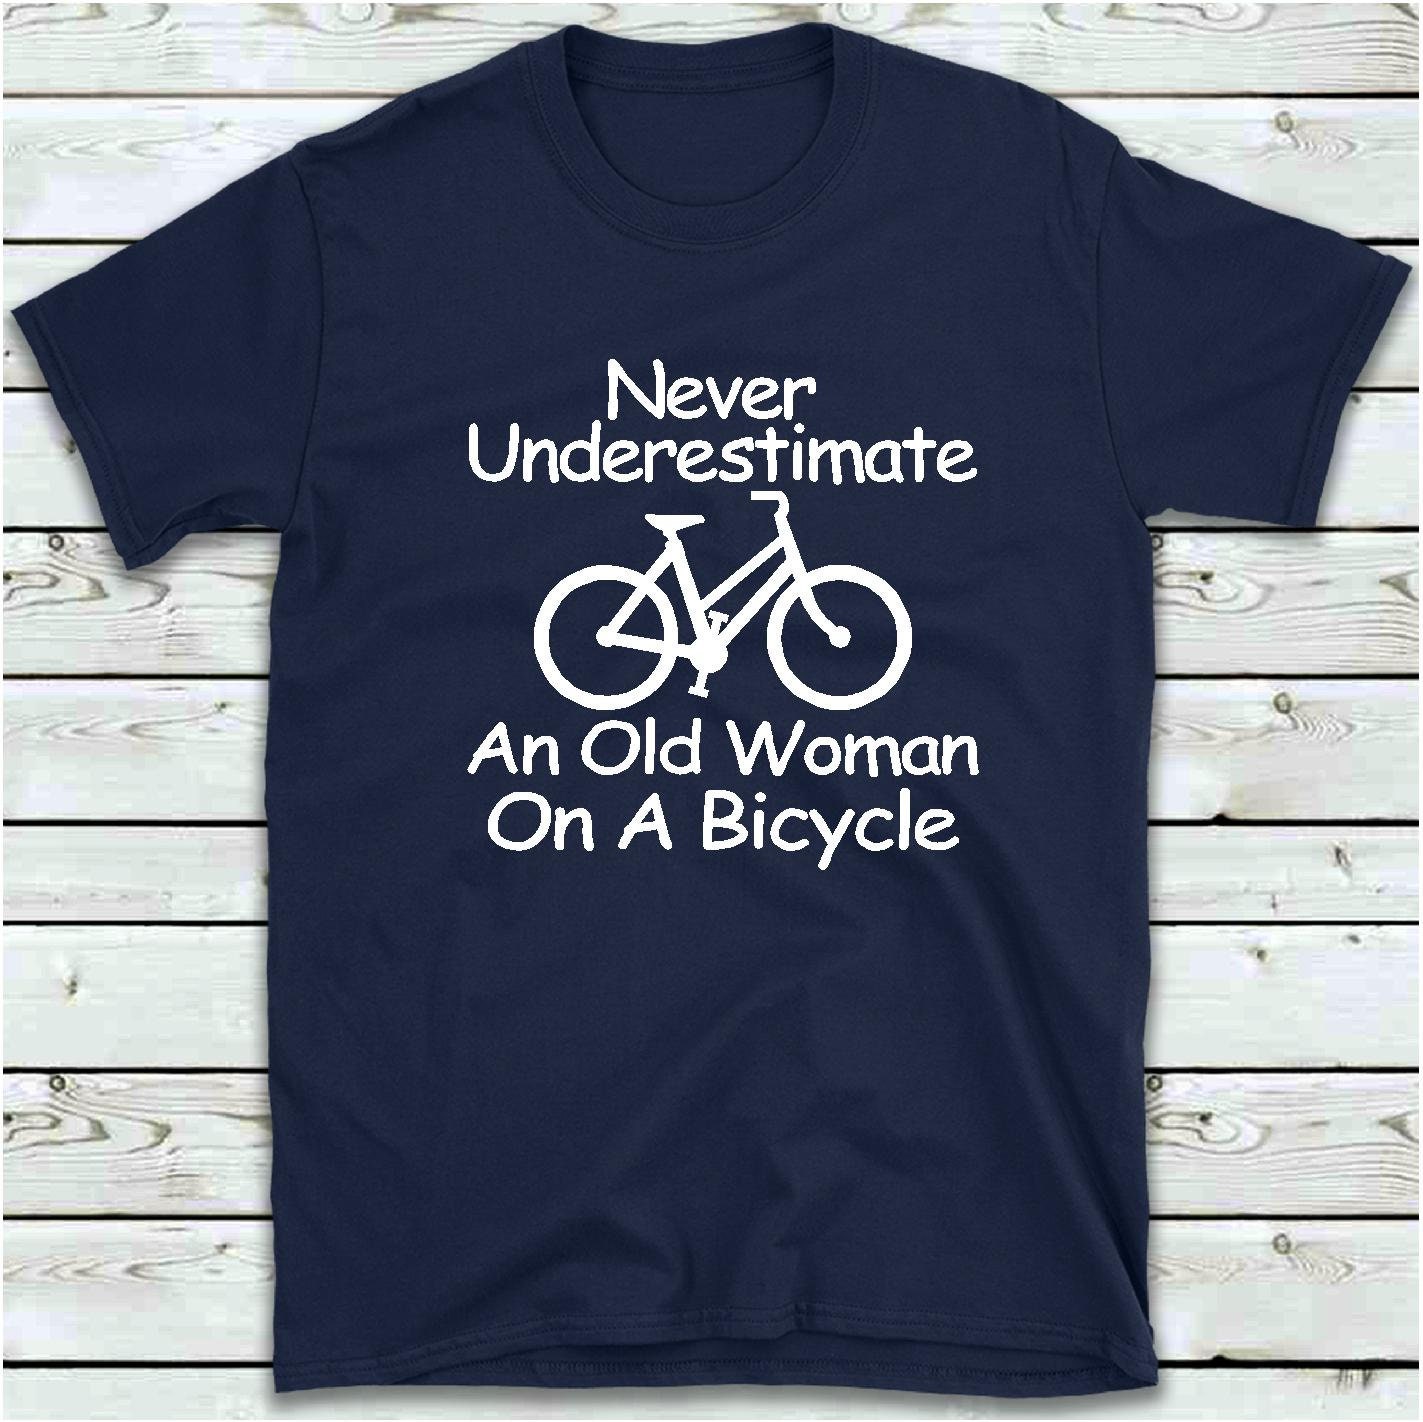 Let's Roll-regalo de los amantes de la bicicleta ciclismo Racerback Camiseta sin mangas Idea de Regalo